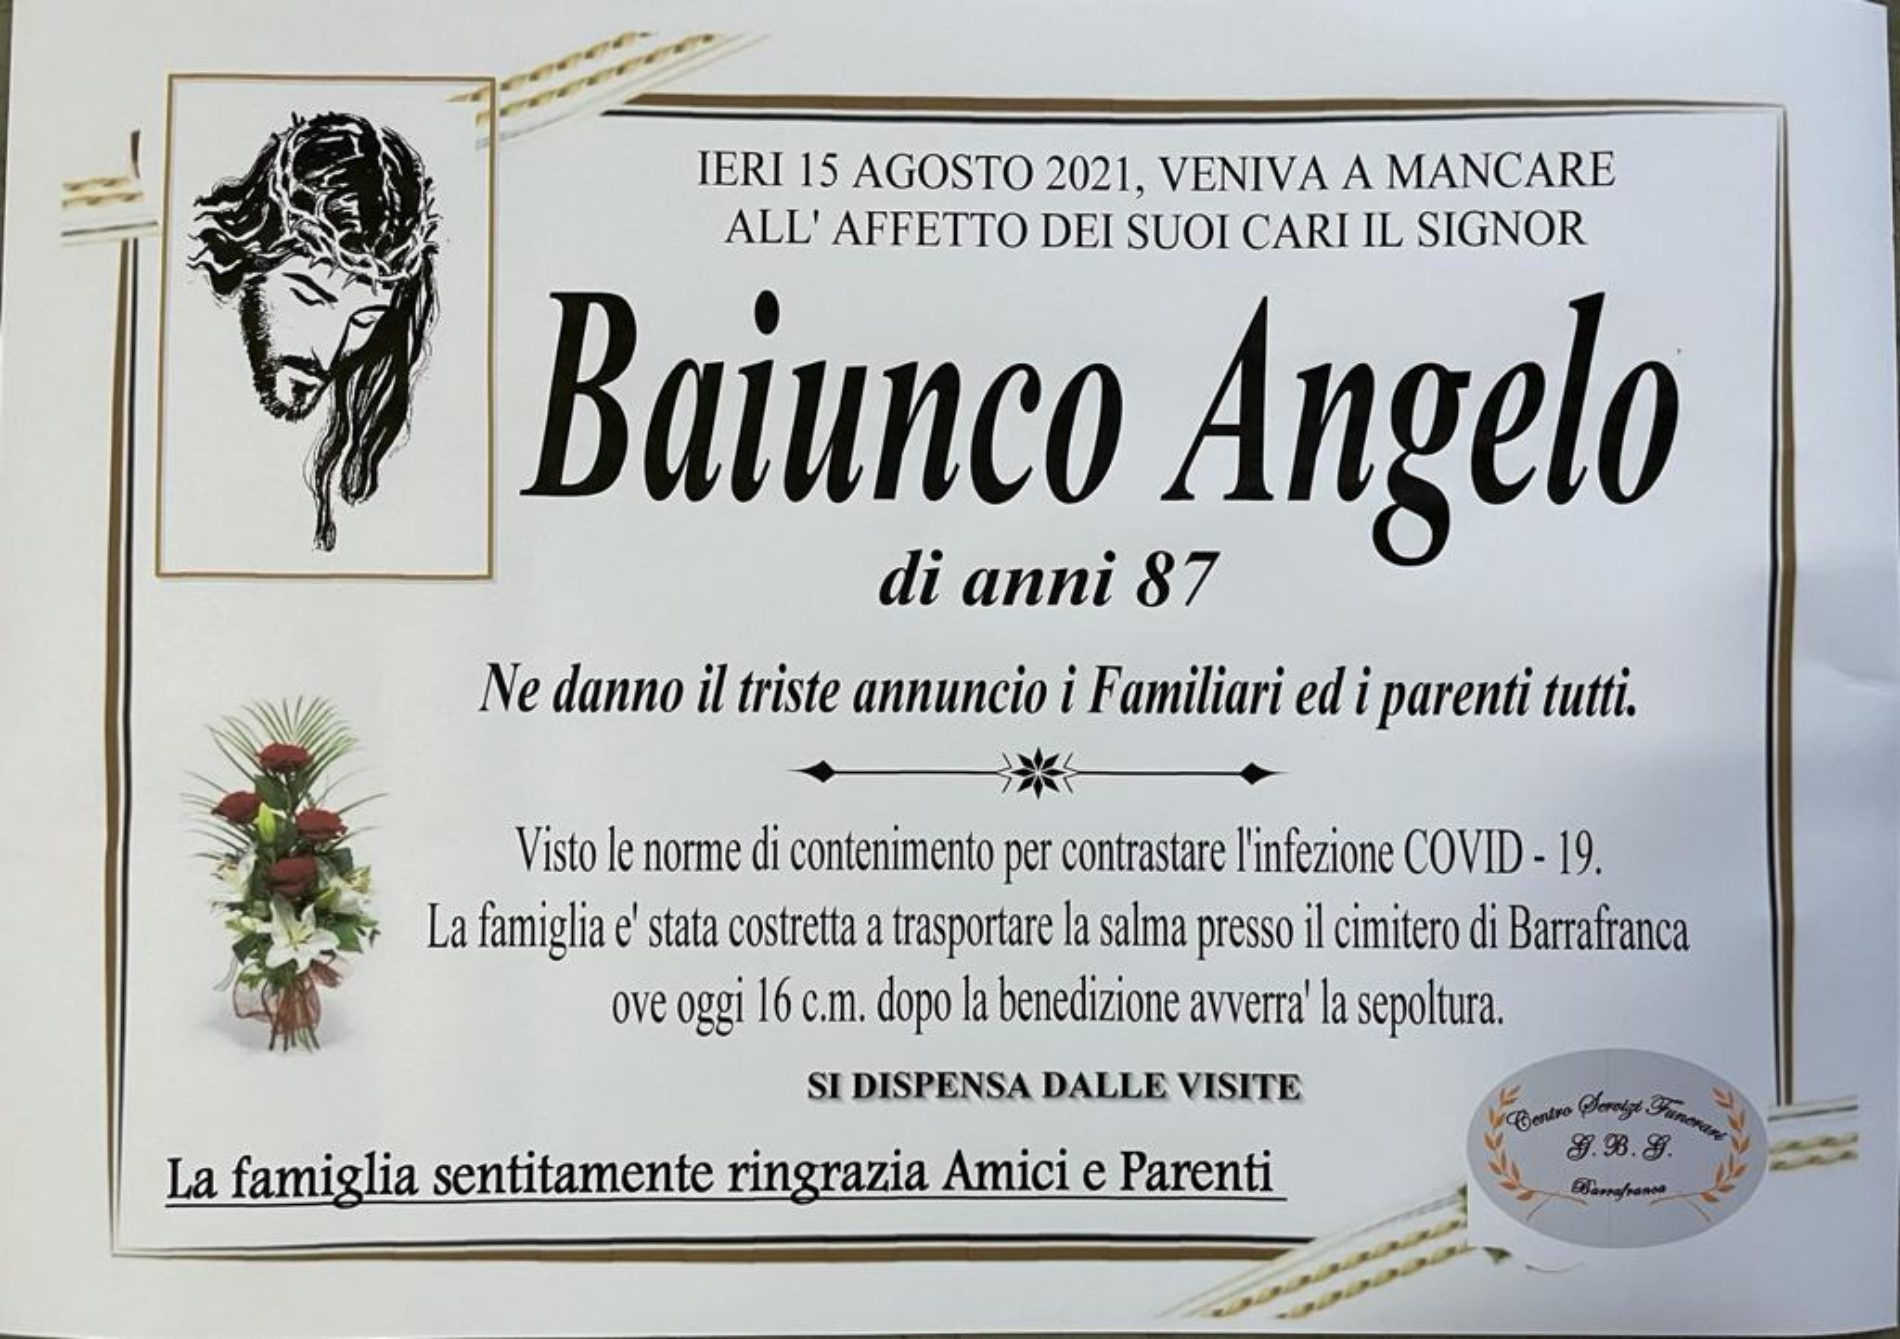 Annuncio servizi funerari Agenzia G.B.G. sig. Baiunco Angelo di anni 87